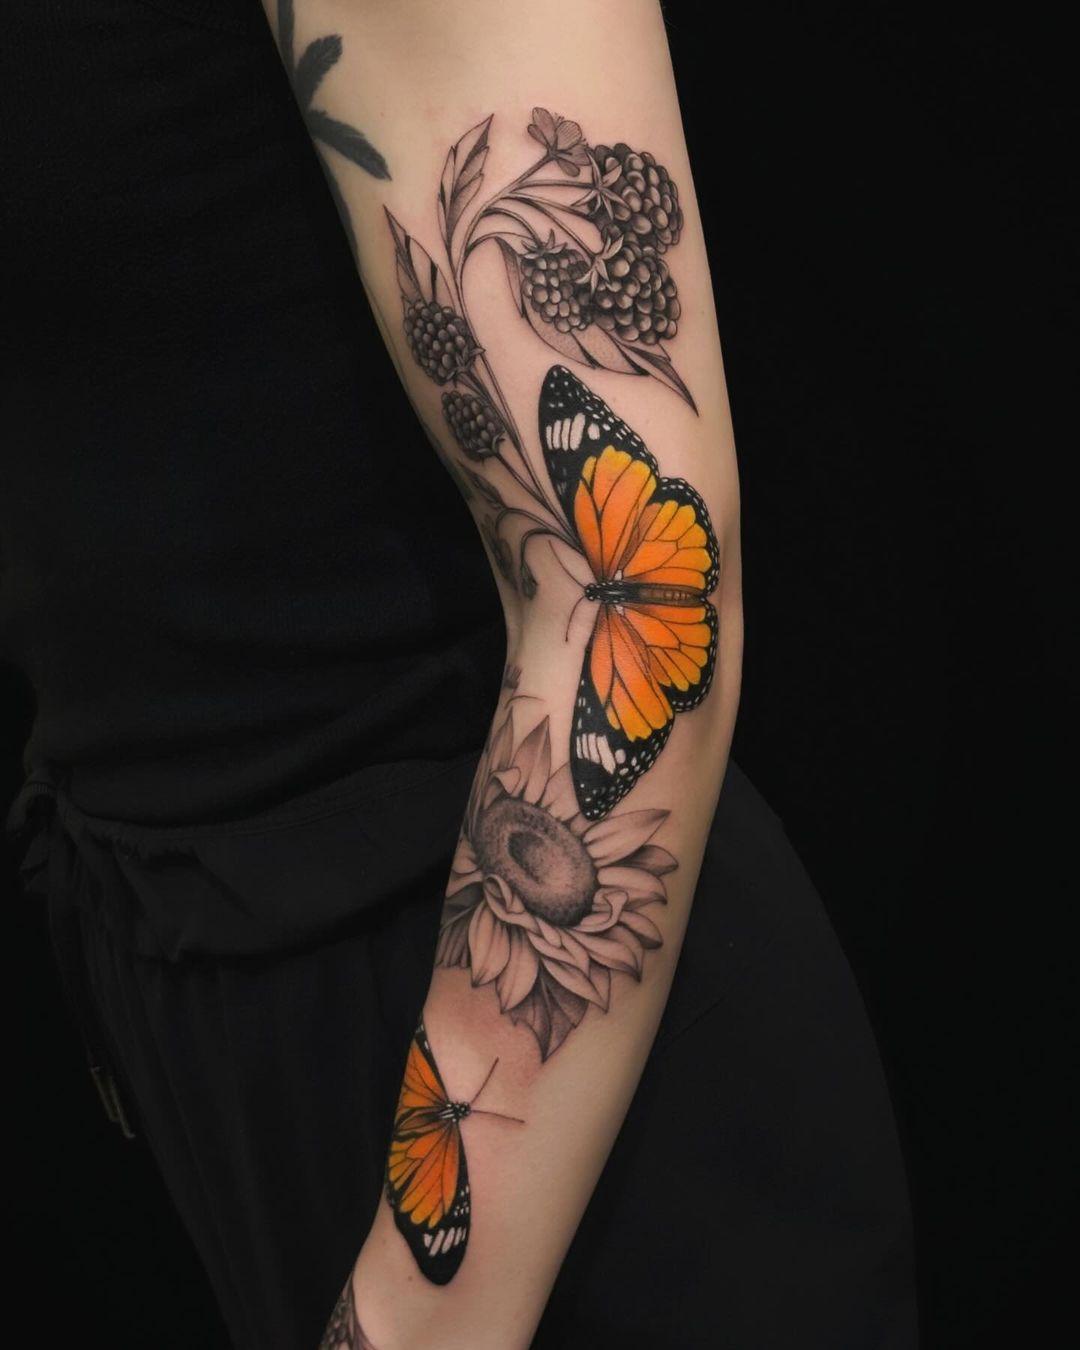 Full-fledged sunflower tattoo 